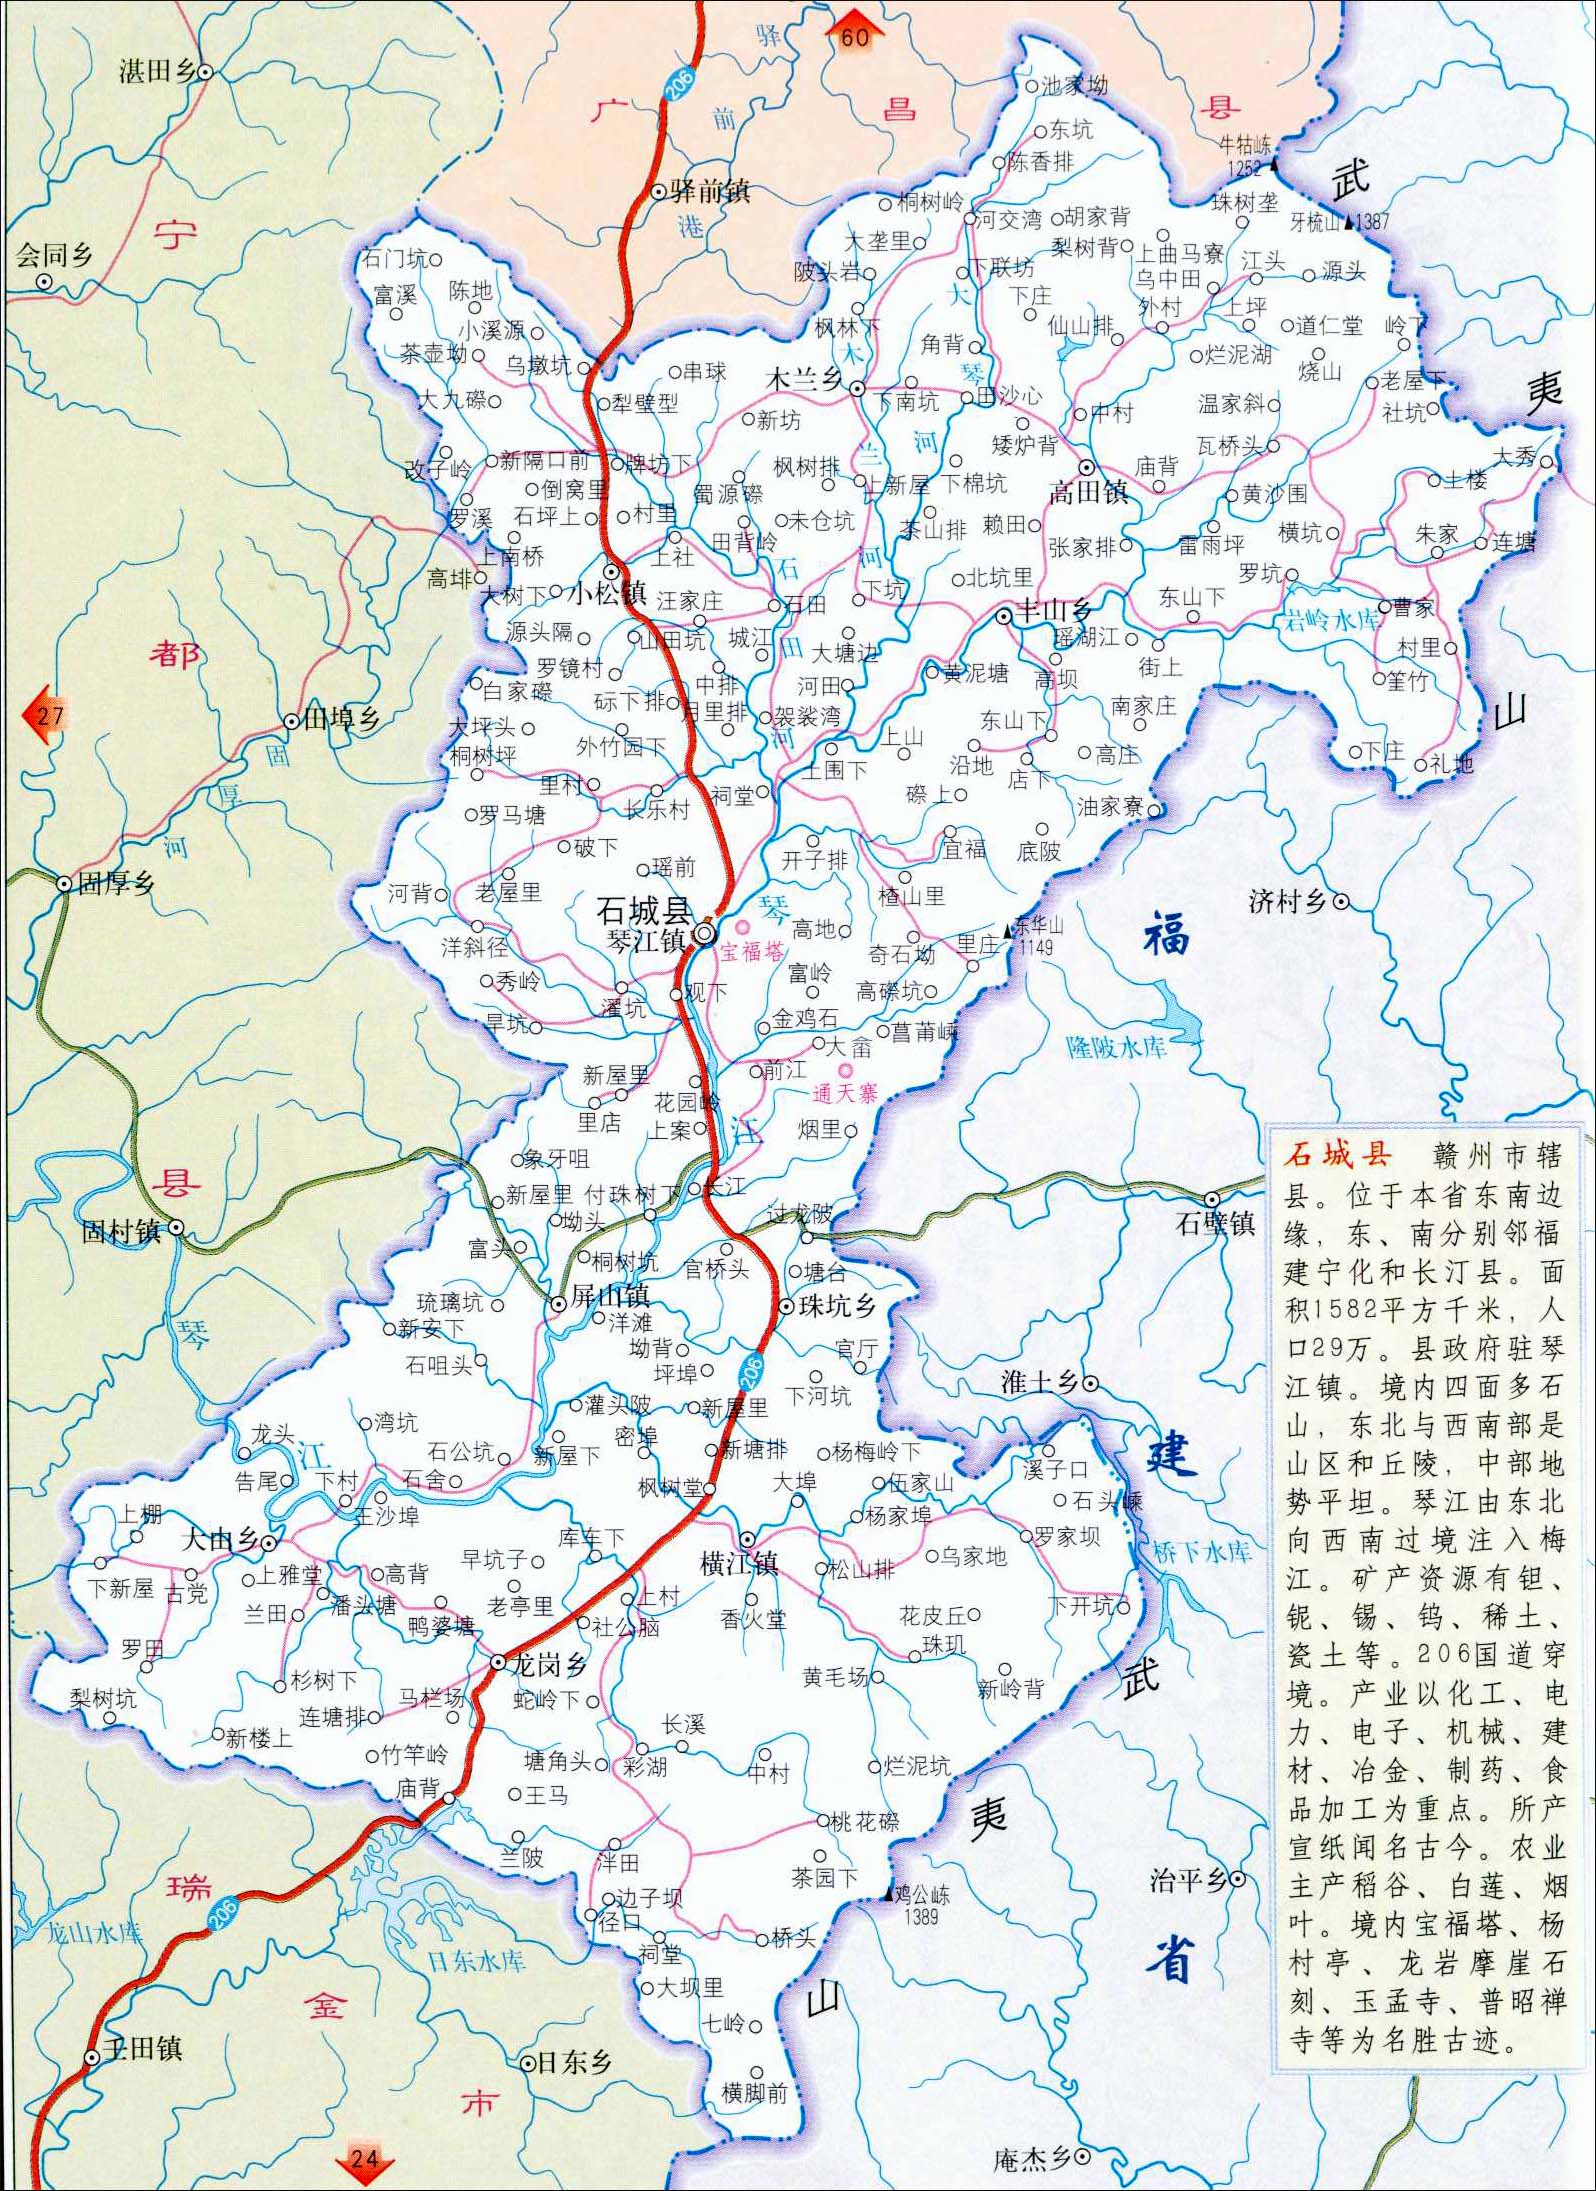 >> 石城县地图                       相关链接: 南昌市  景德镇市图片